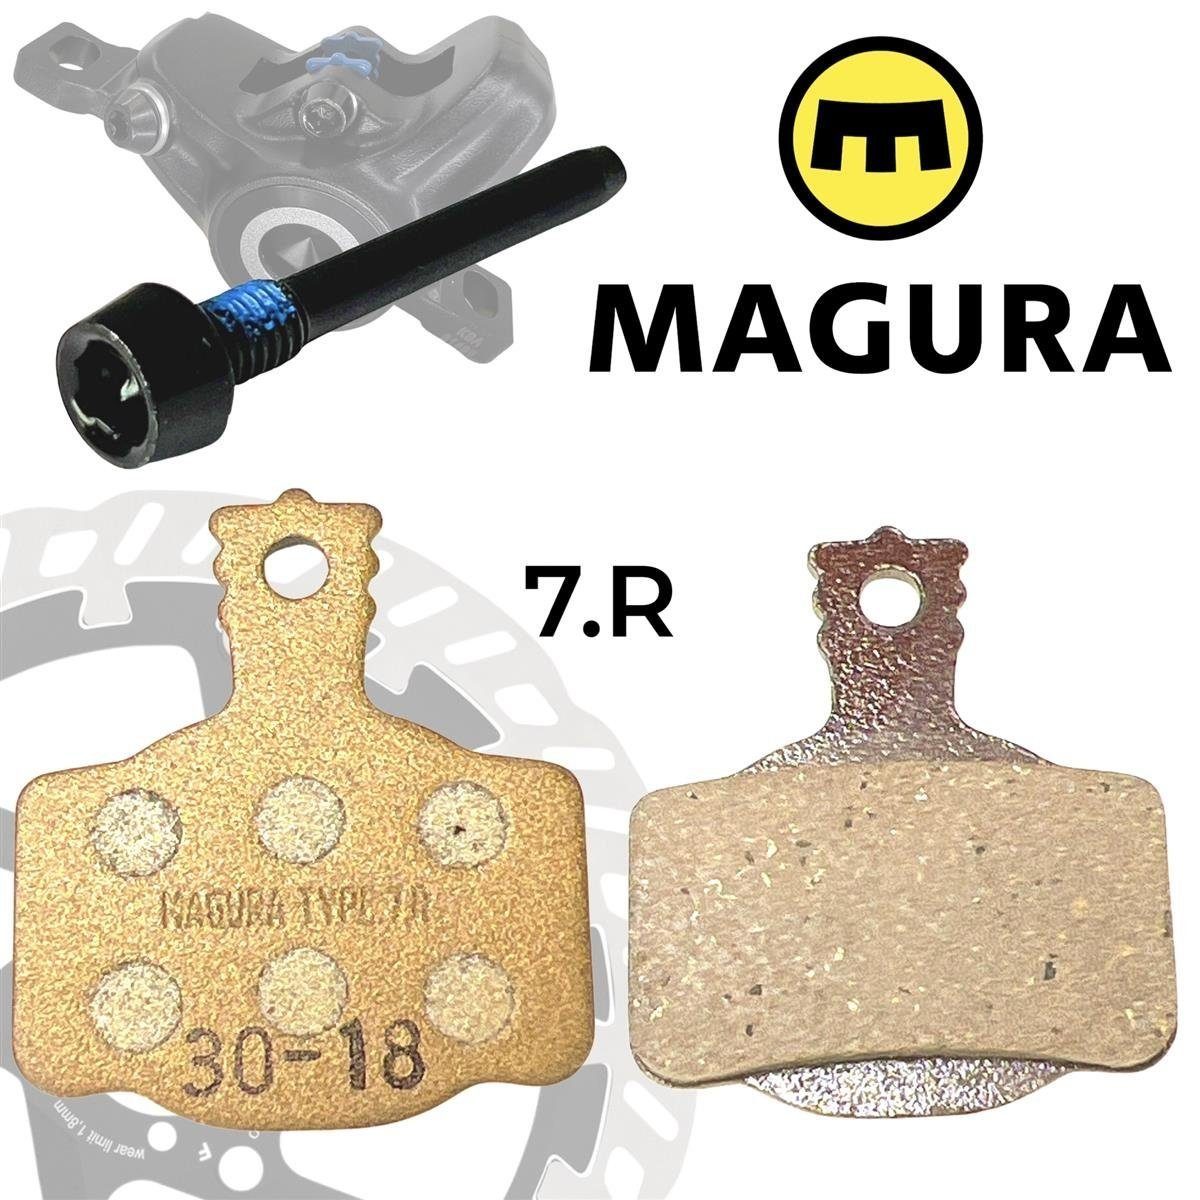 Magura Bremsbeläge 7.P / 7.R / 7.S für MT2 / MT4 / MT6 / MT8, 12,50 €